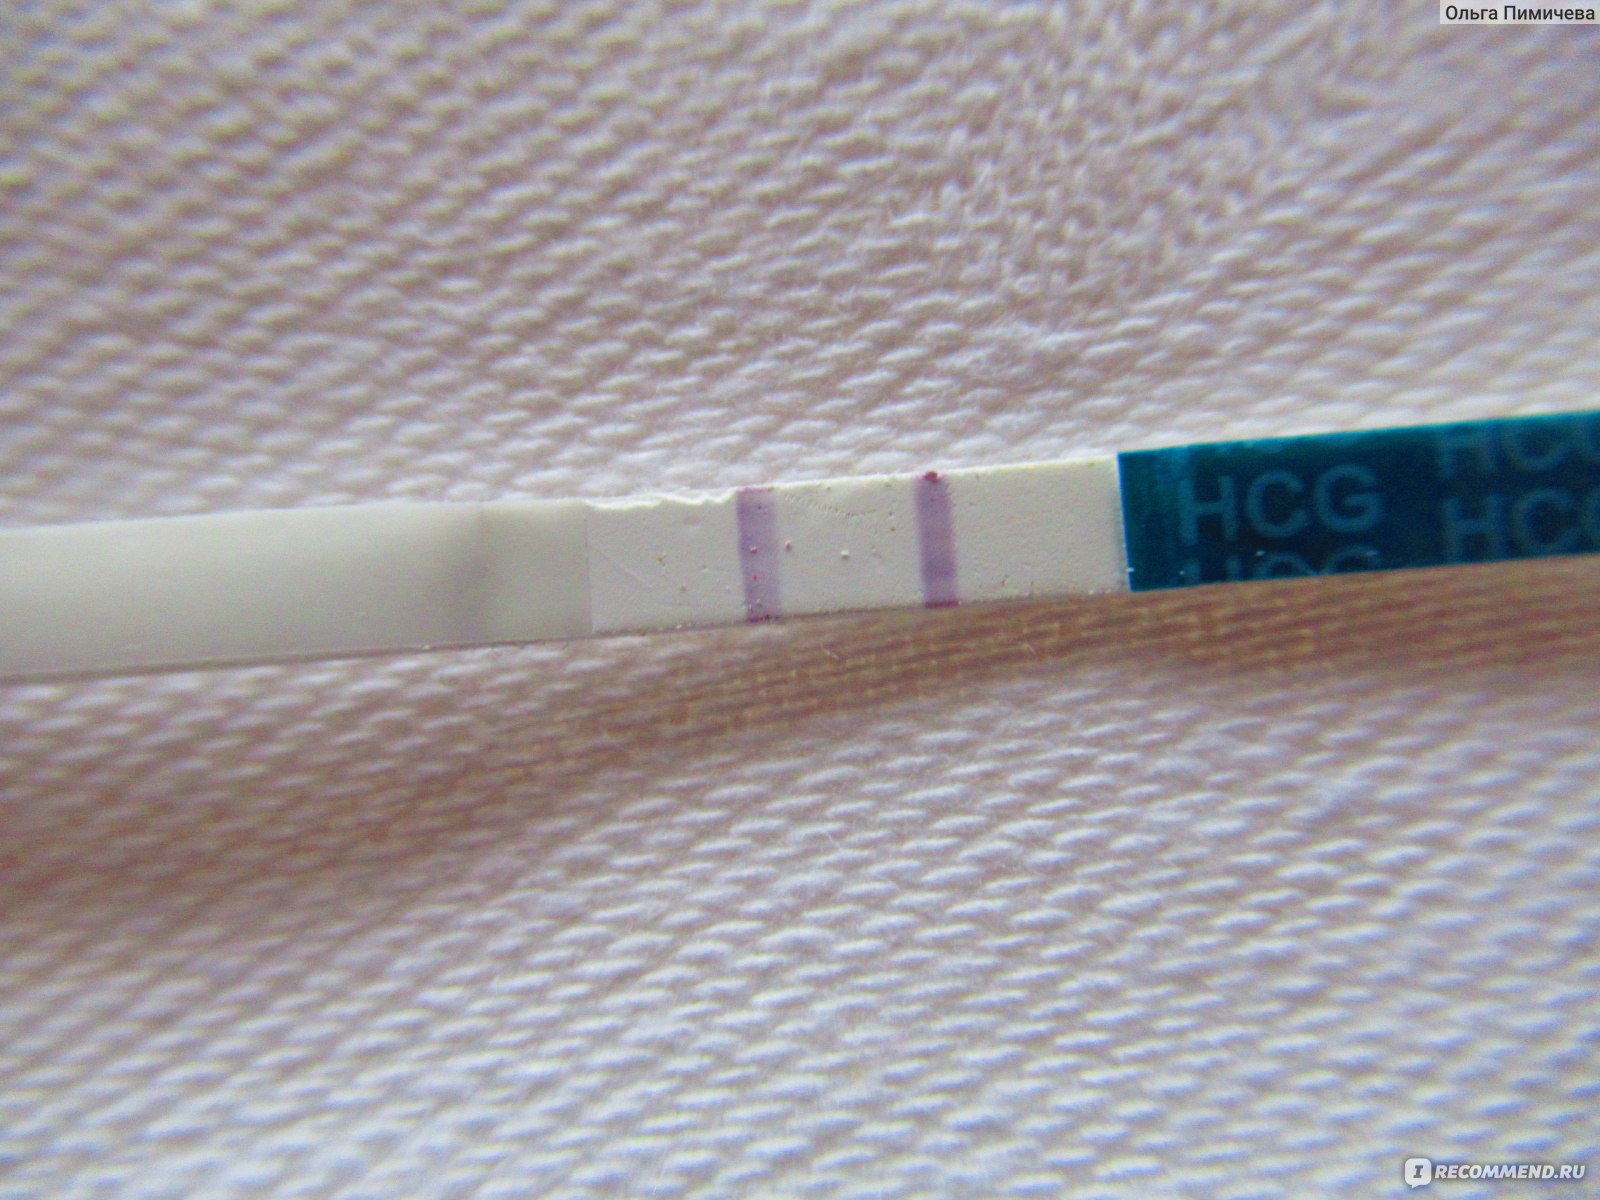 Фото теста на беременность 2 полоски на ранних сроках